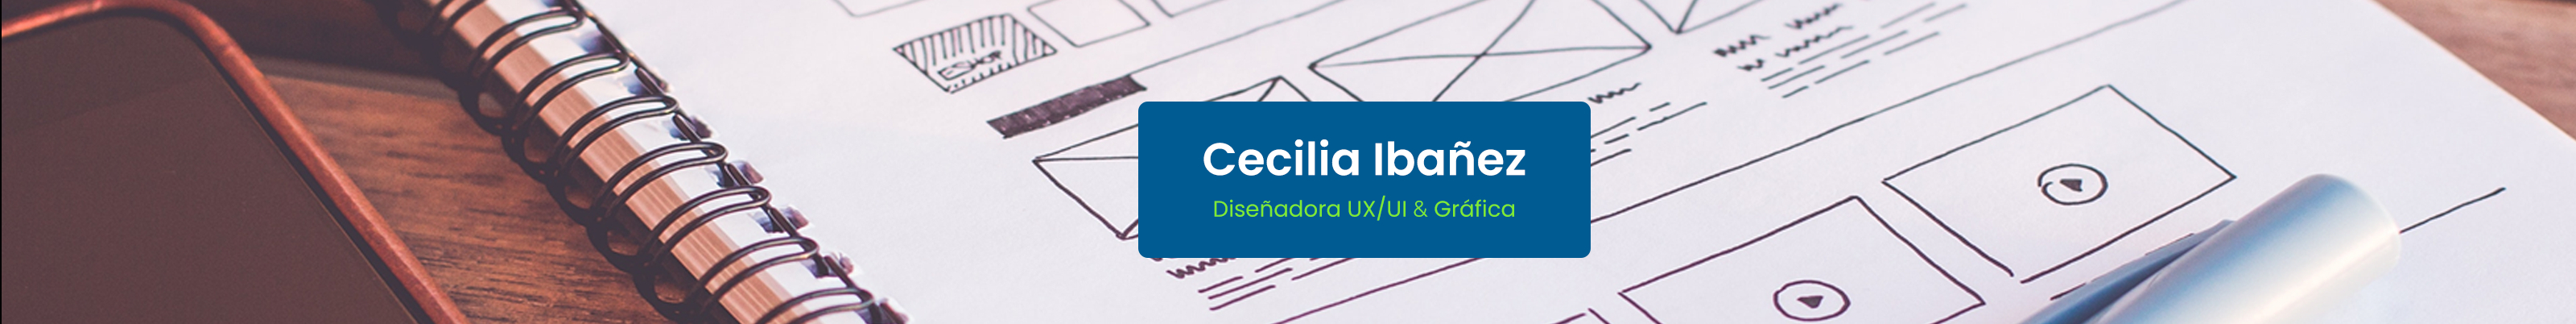 Cecilia Ibañez's profile banner